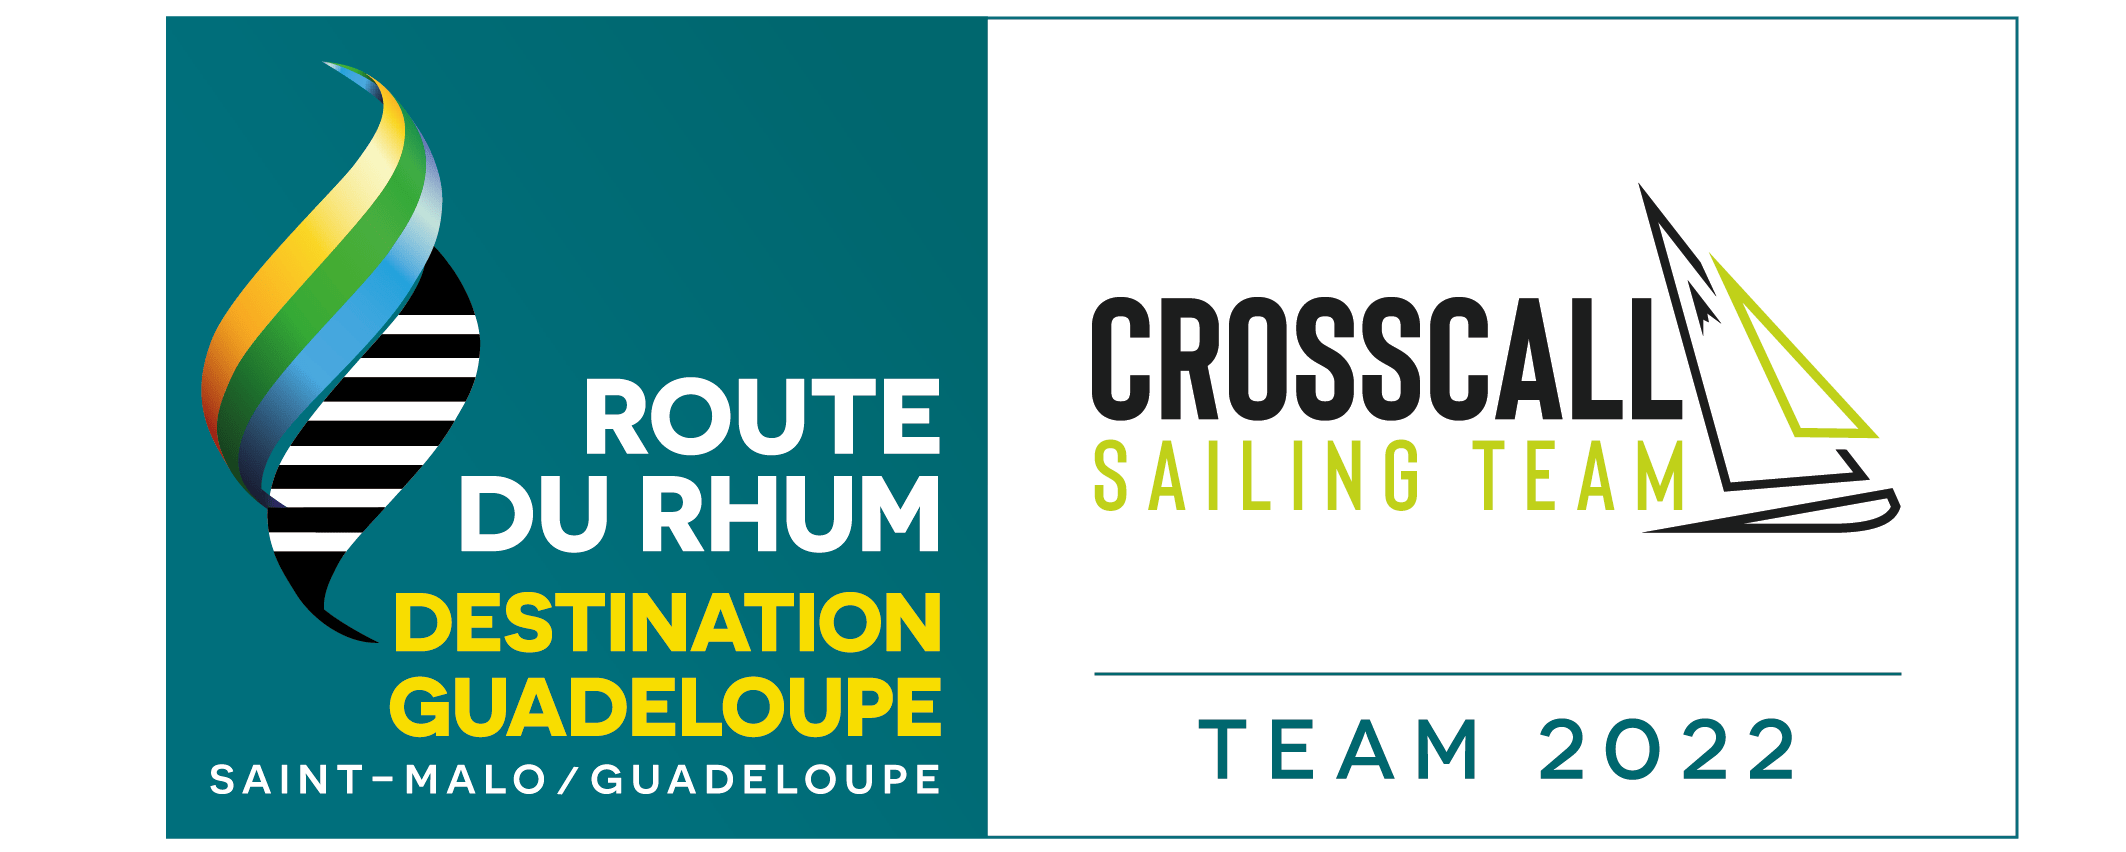 Logo Route du Rhum X Crosscall Sailing Team